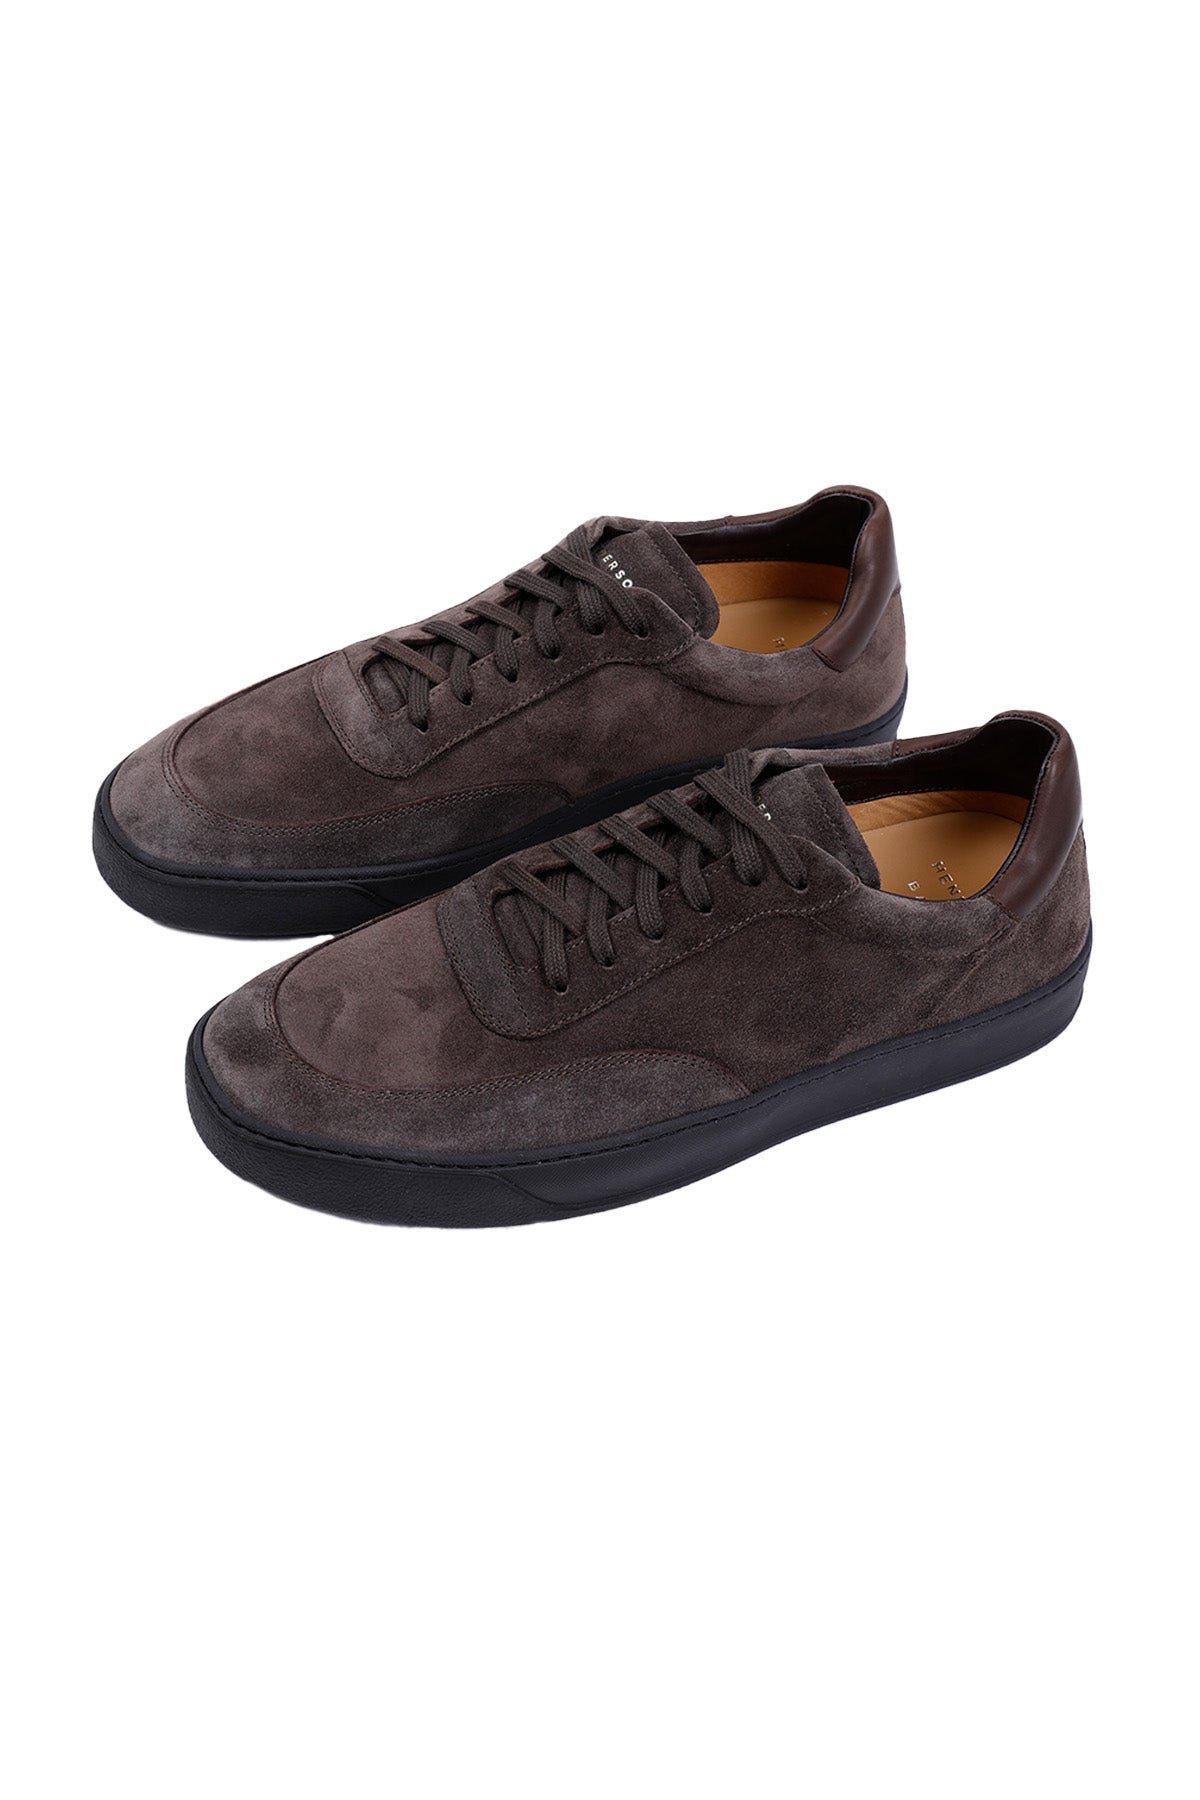 Henderson Mitch Süet Casual Sneaker Ayakkabı-Libas Trendy Fashion Store